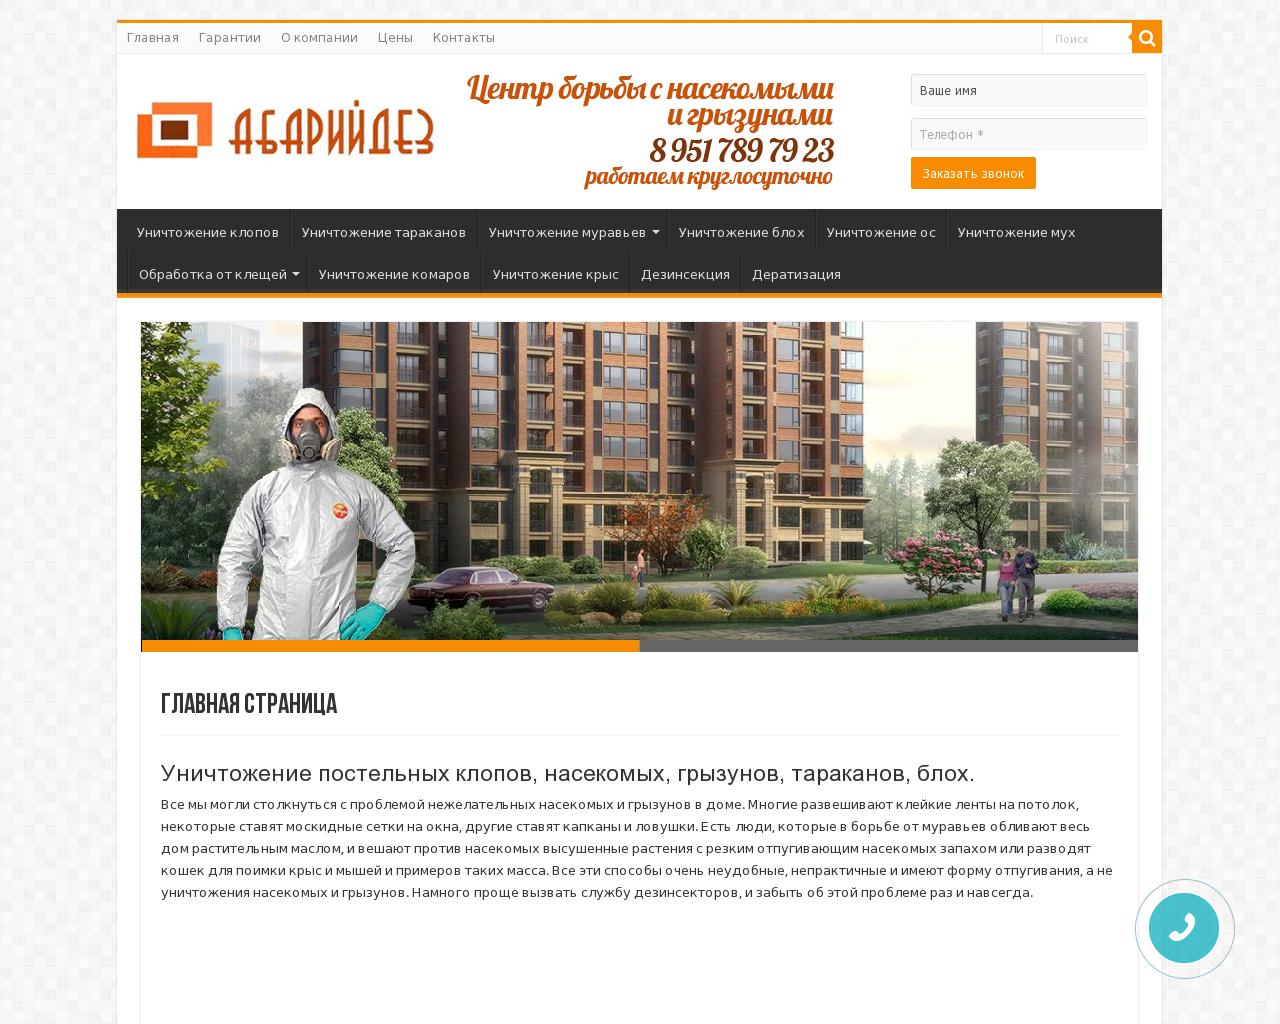 Изображение сайта abaridez.ru в разрешении 1280x1024